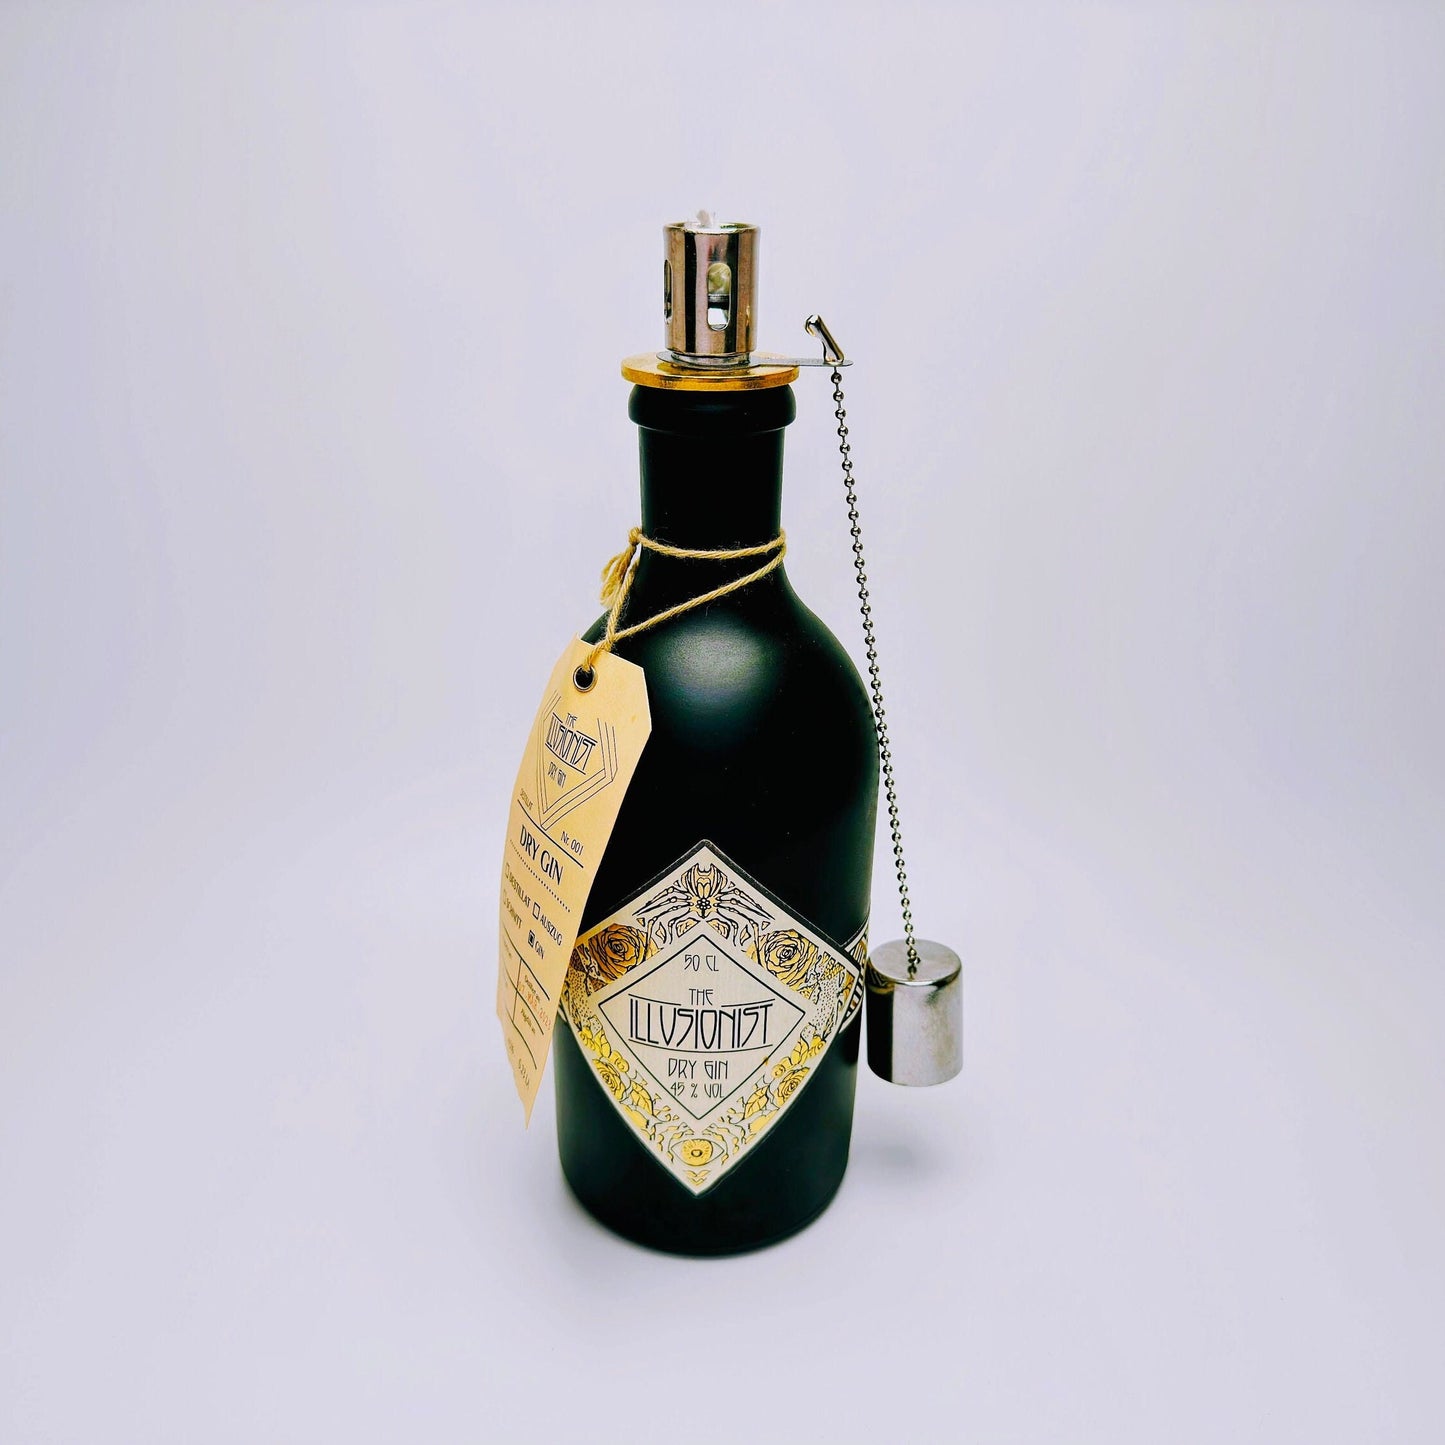 Gin Öllampe "Illusionist" | Handgemachte Öllampe aus Illusionist Gin Flaschen | Upcycling | Handgefertigt | Individuell | Geschenk | Deko